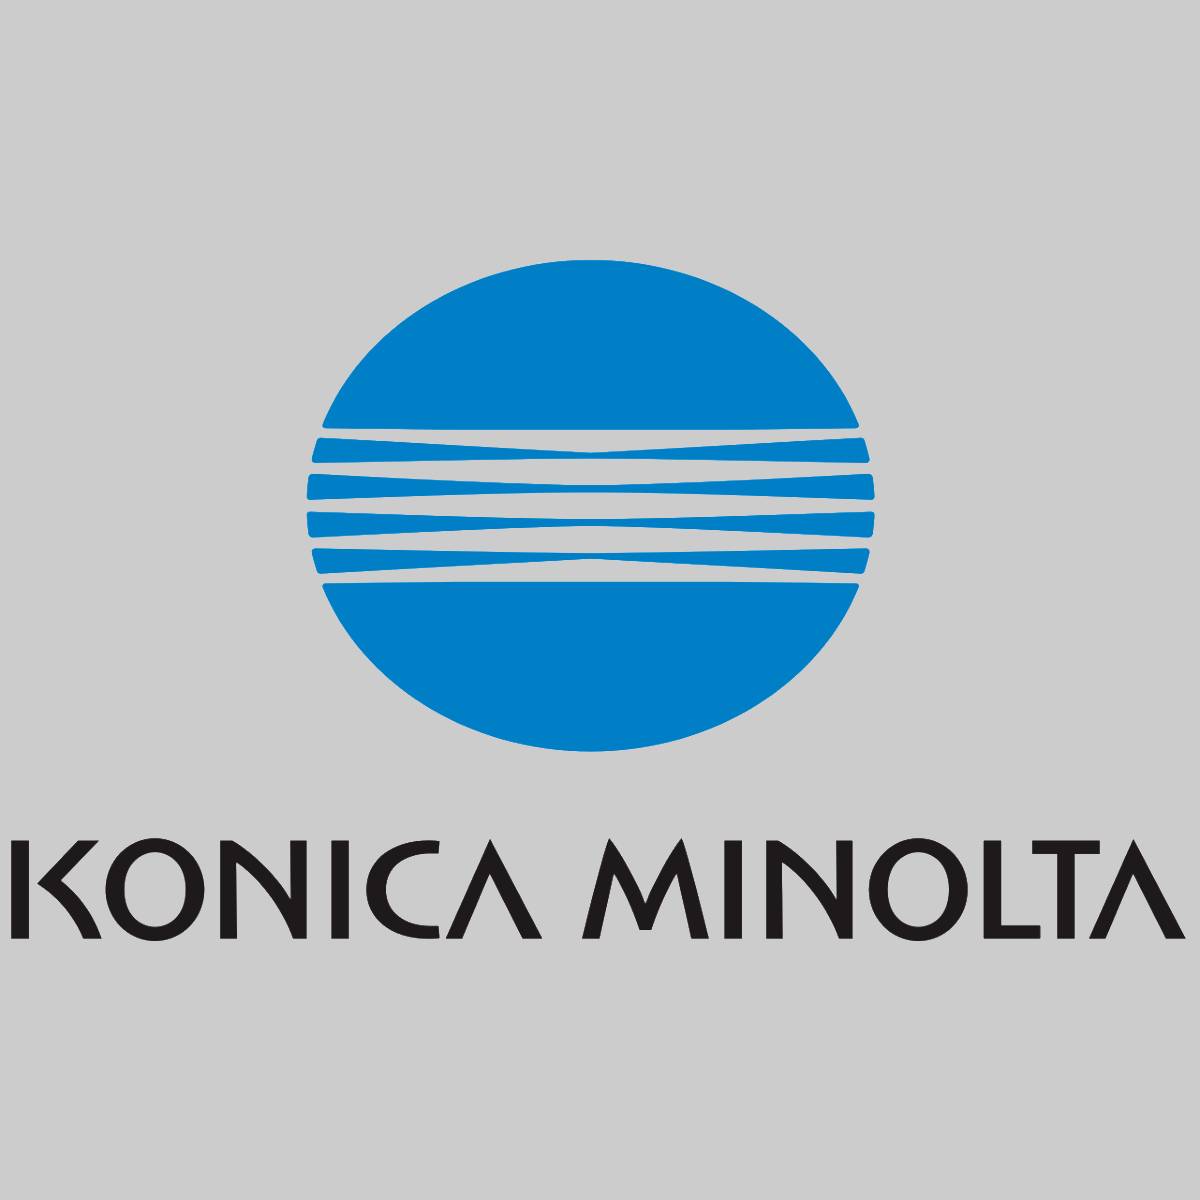 "Original Konica Minolta toner cyan 1710490-004 for Magicolor 3100 NEW OVP